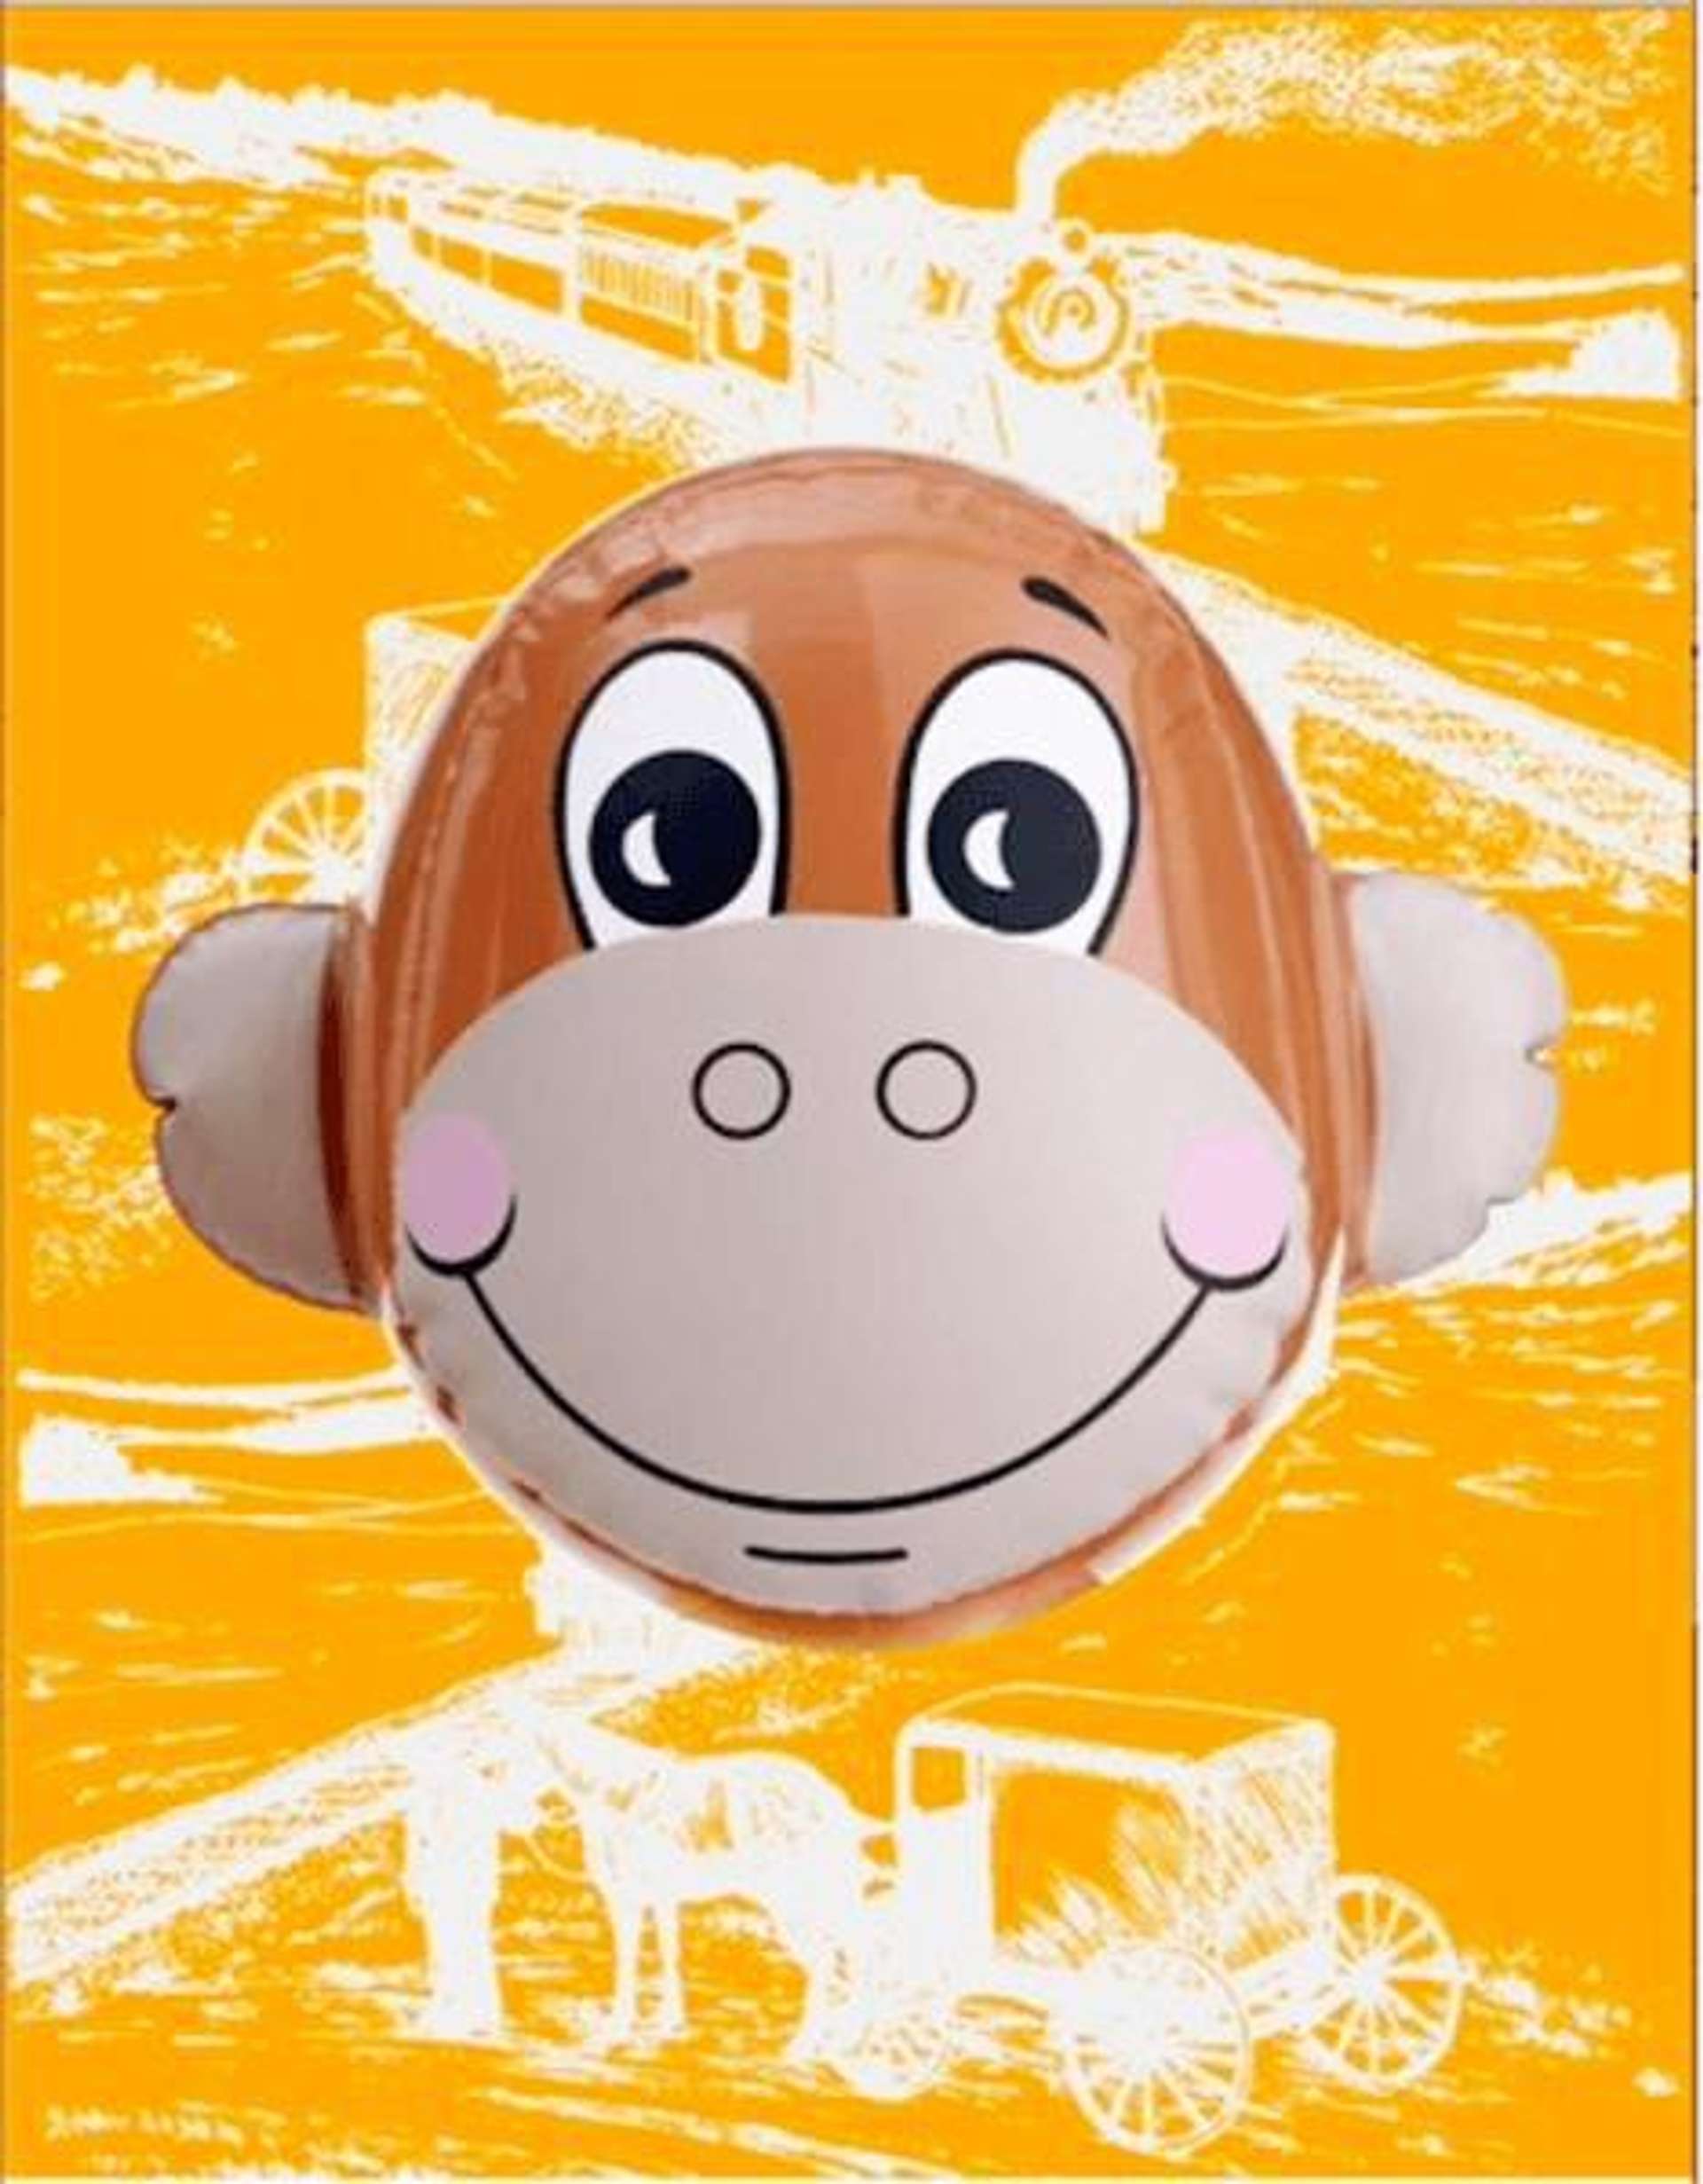 Monkey Train (orange) - Signed Print by Jeff Koons 2007 - MyArtBroker